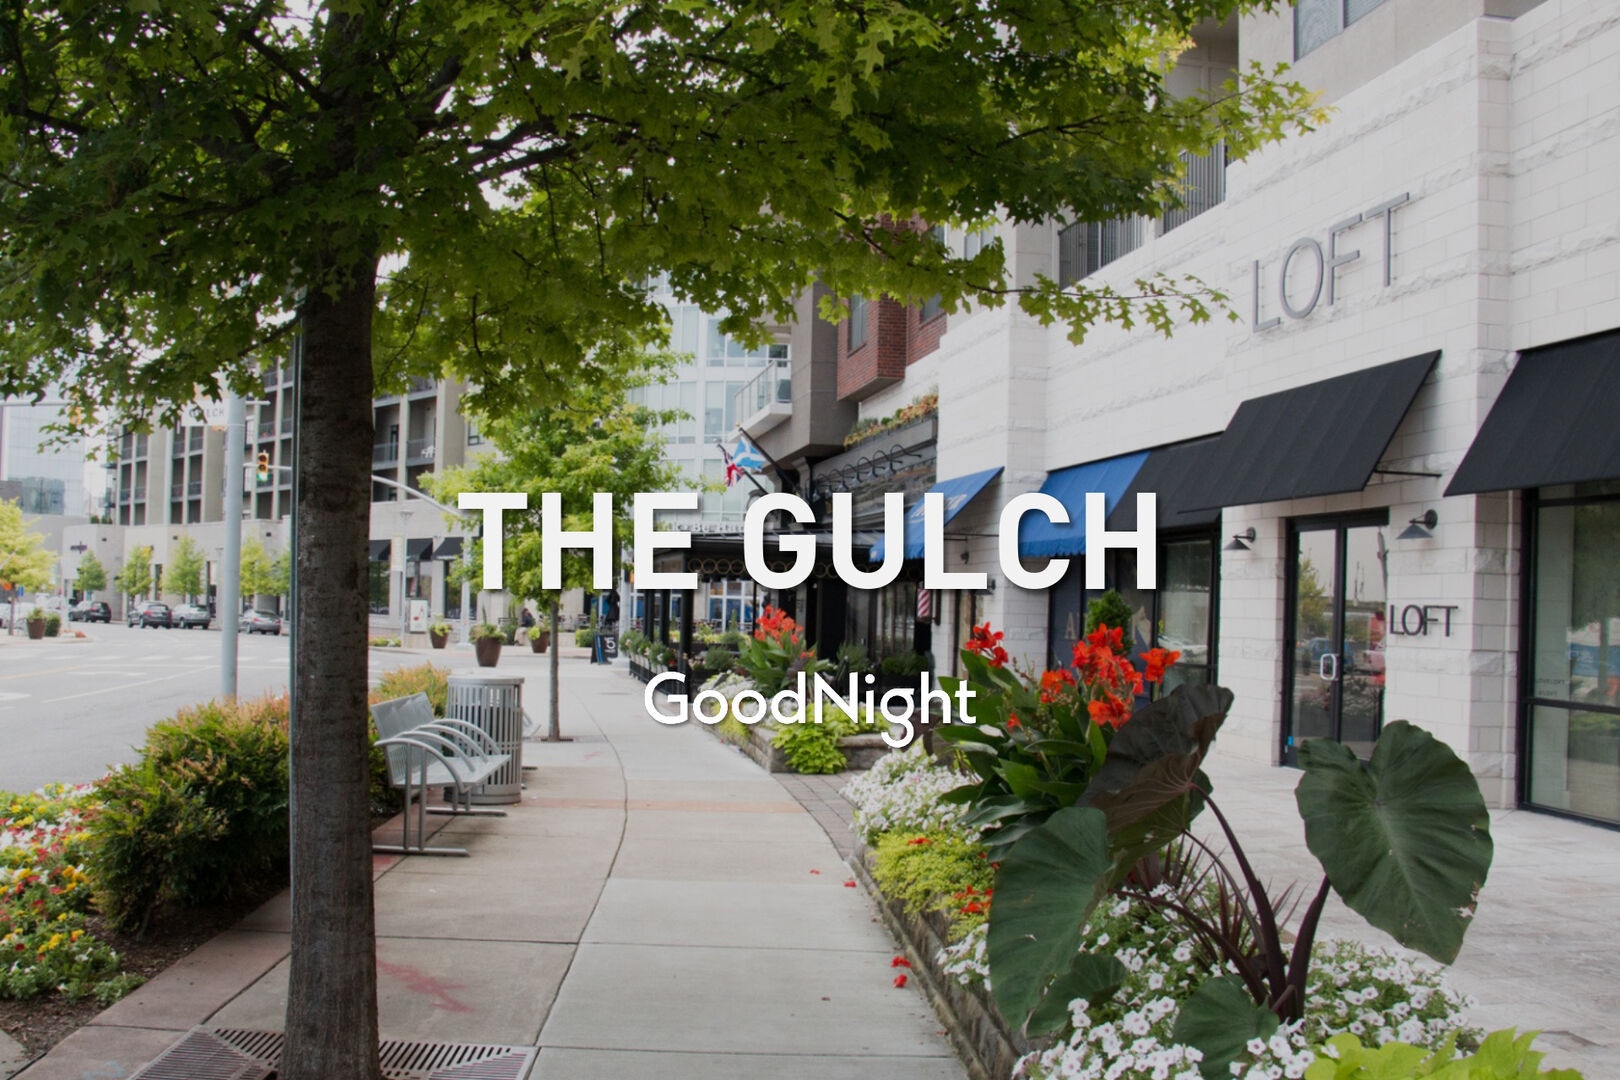 6 mins: The Gulch6 mins: The Gulch